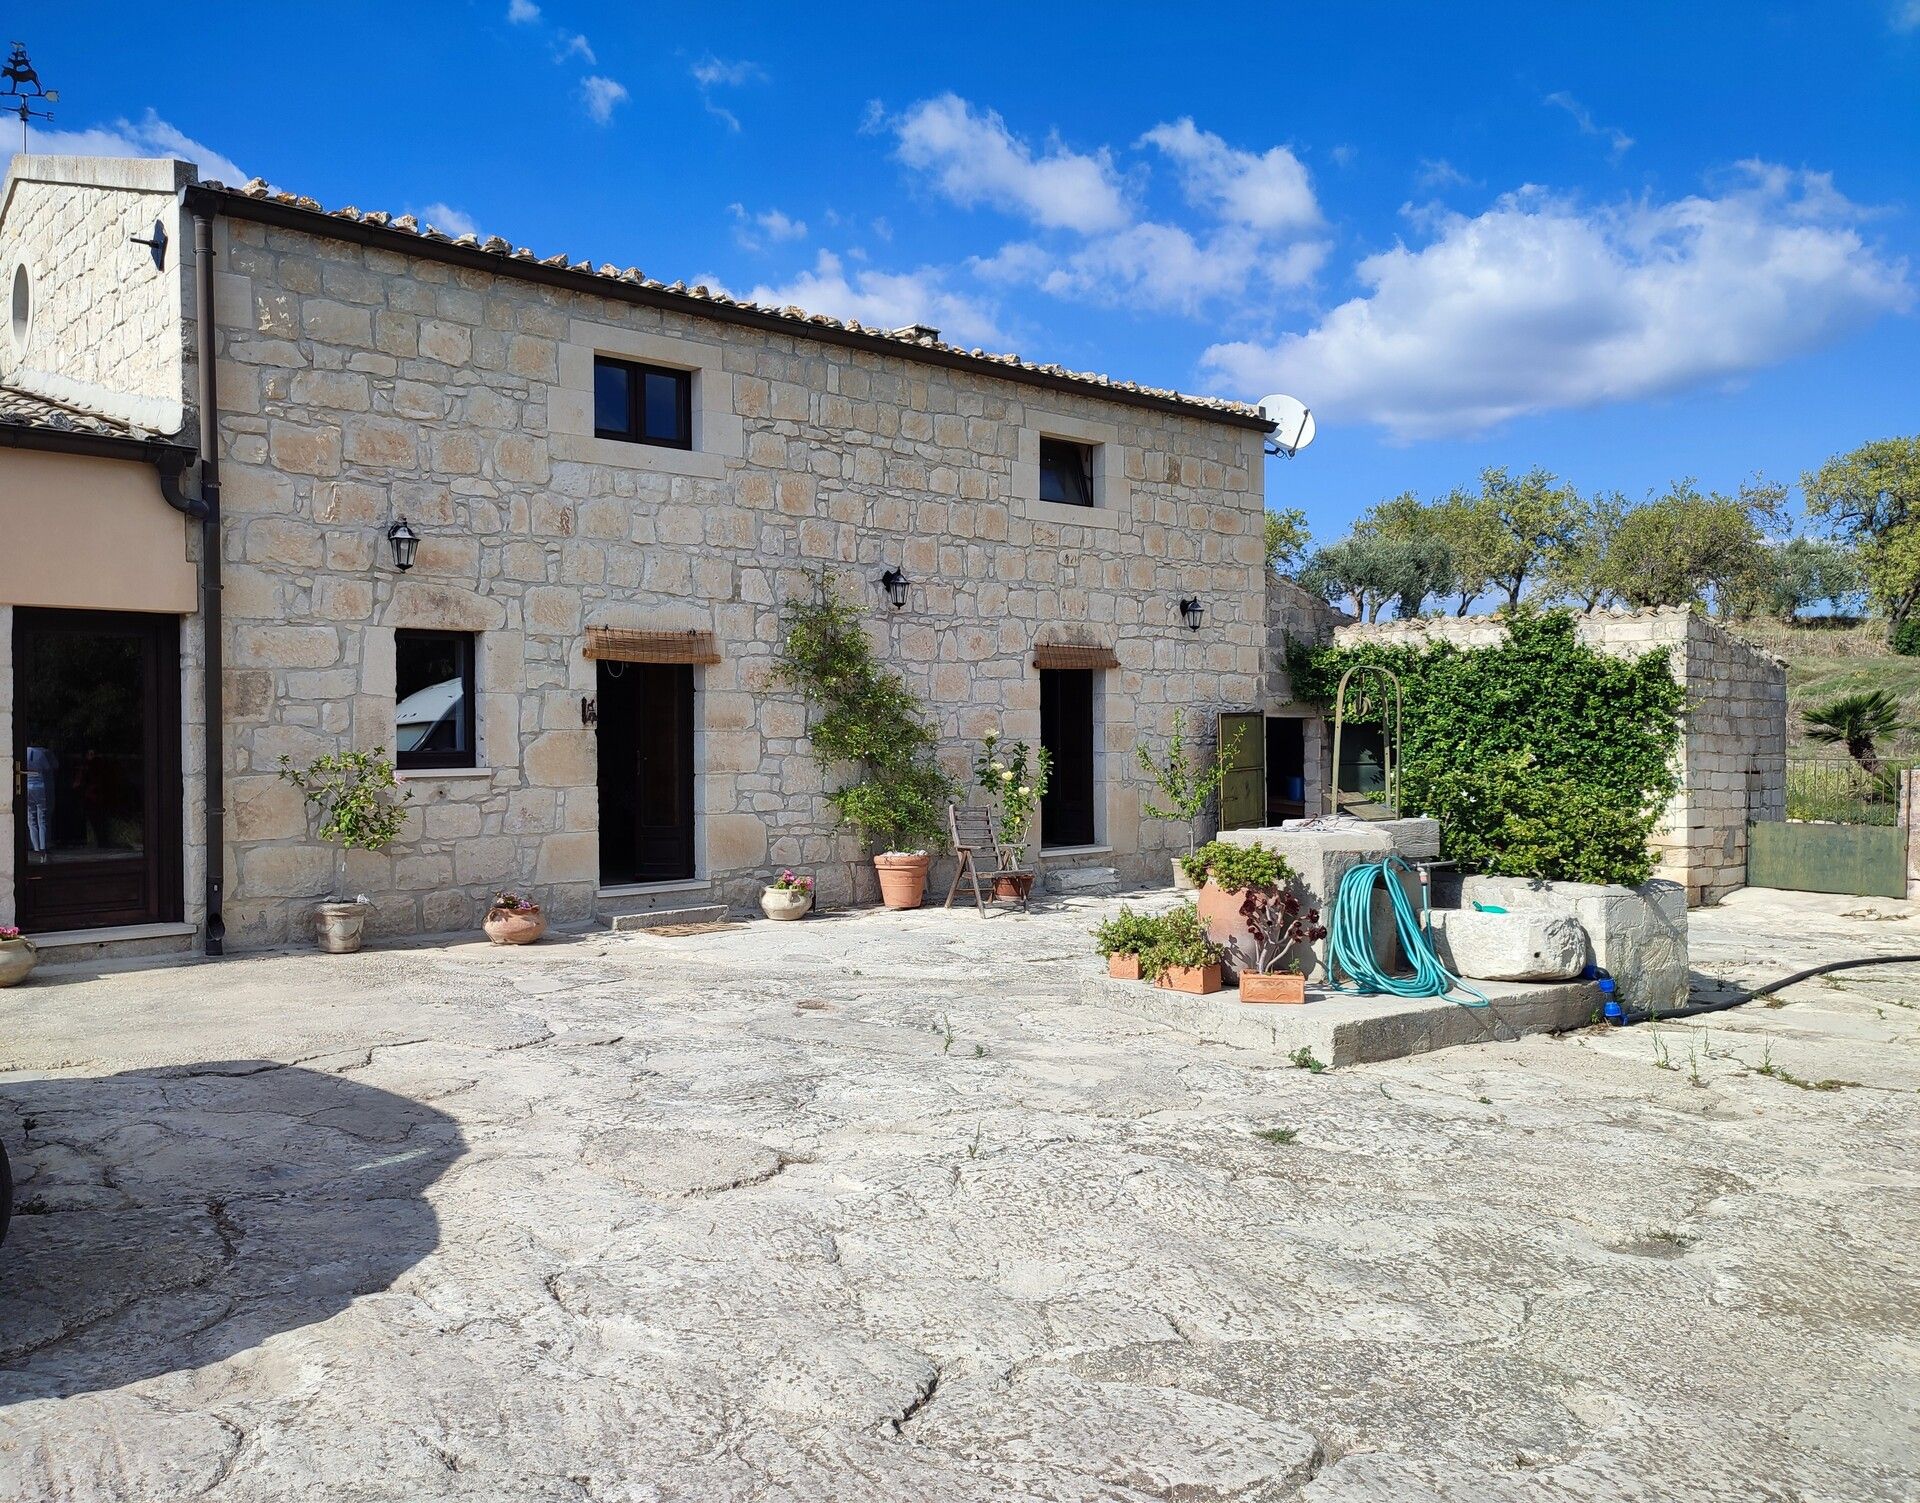 A vendre villa in montagne Rosolini Sicilia